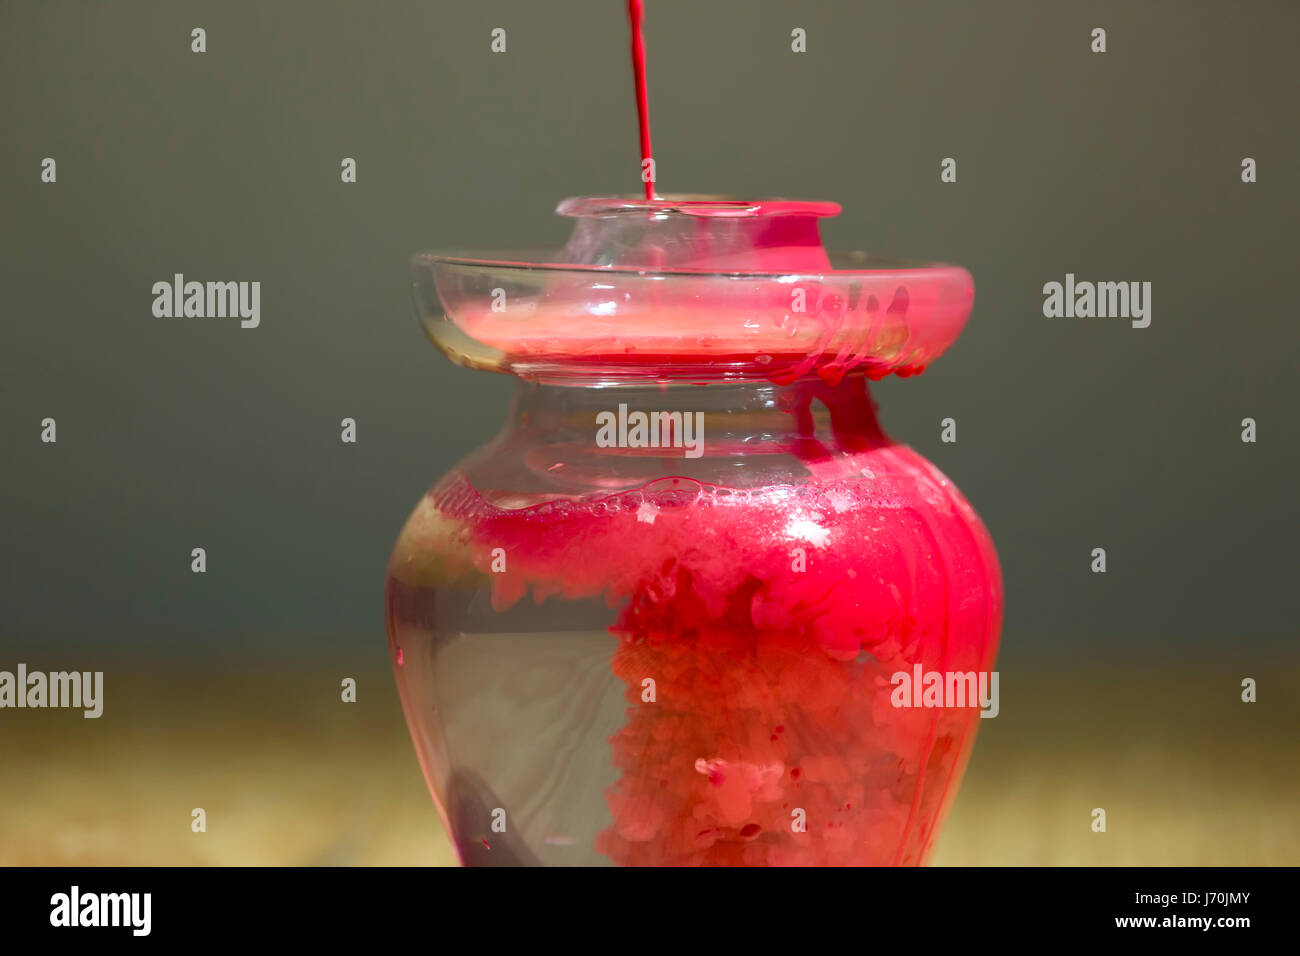 La vernice rossa caduta in acqua in una brocca di vetro. Foto Stock